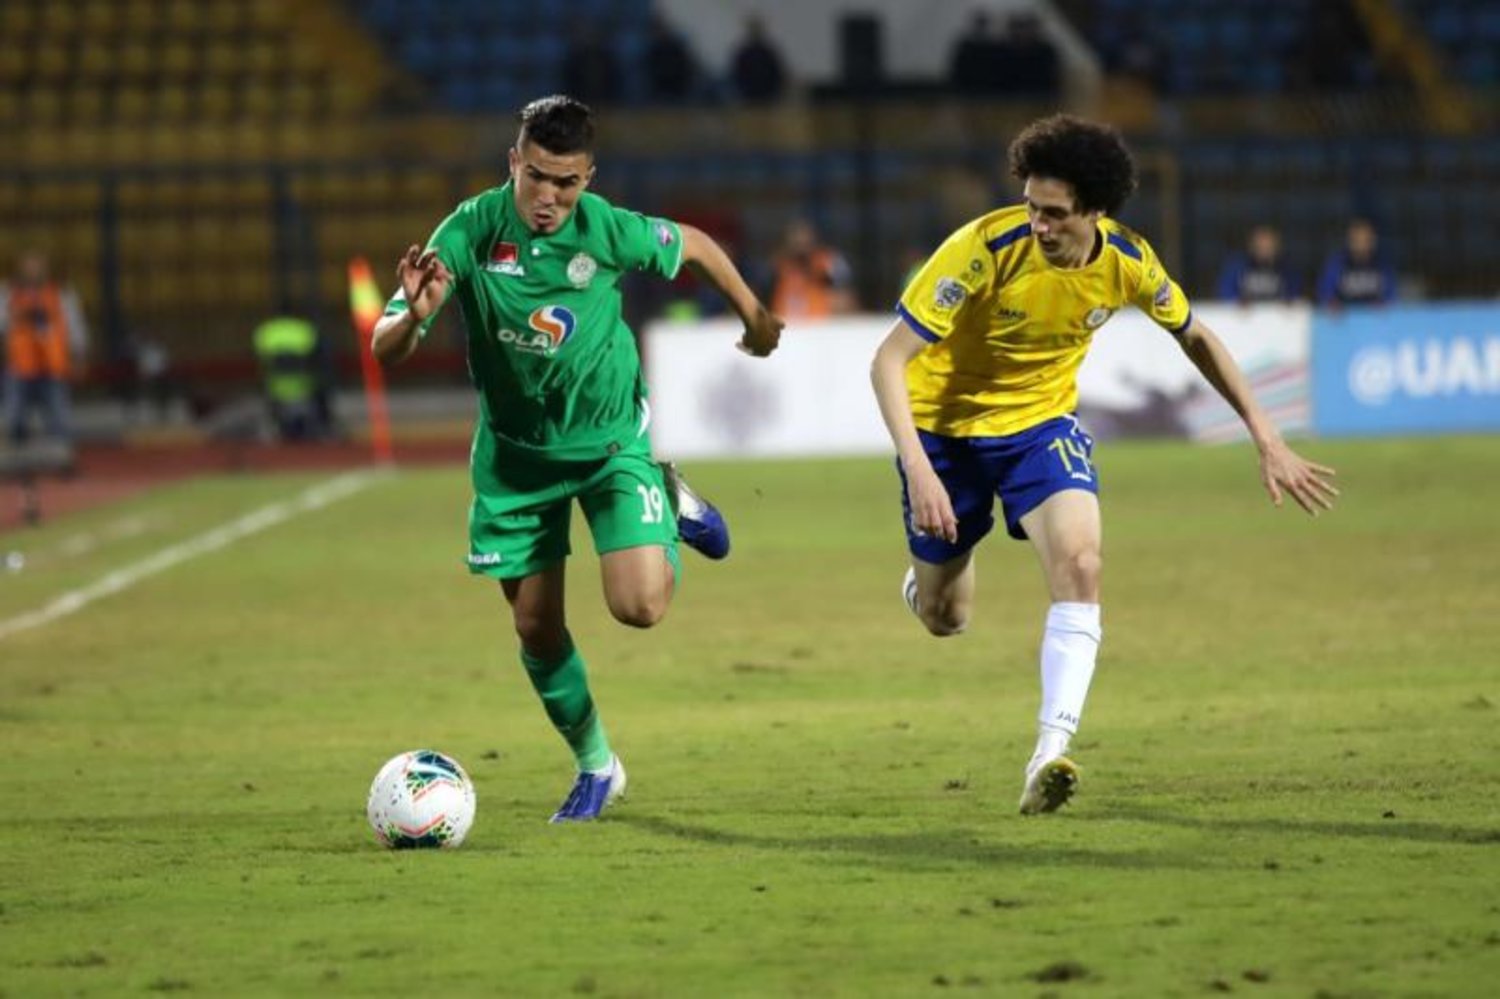 مباراة الذهاب للدور نصف النهائي بين الرجاء البيضاوي المغربي والإسماعيلي المصري (تويتر)